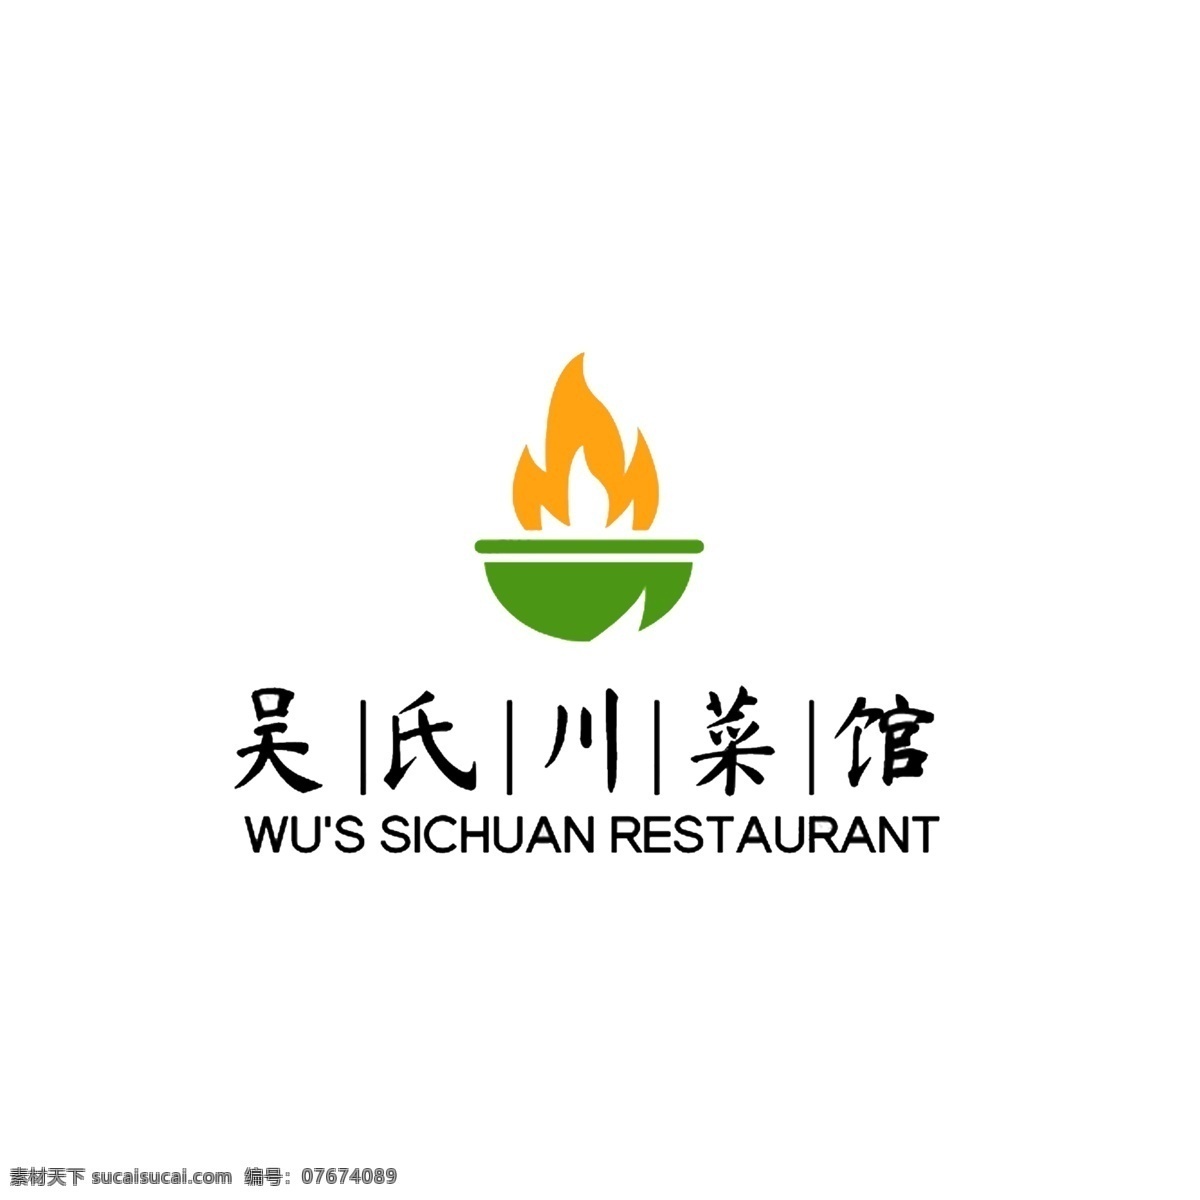 吴氏川菜馆 川菜 美食 logo 餐饮 logo设计